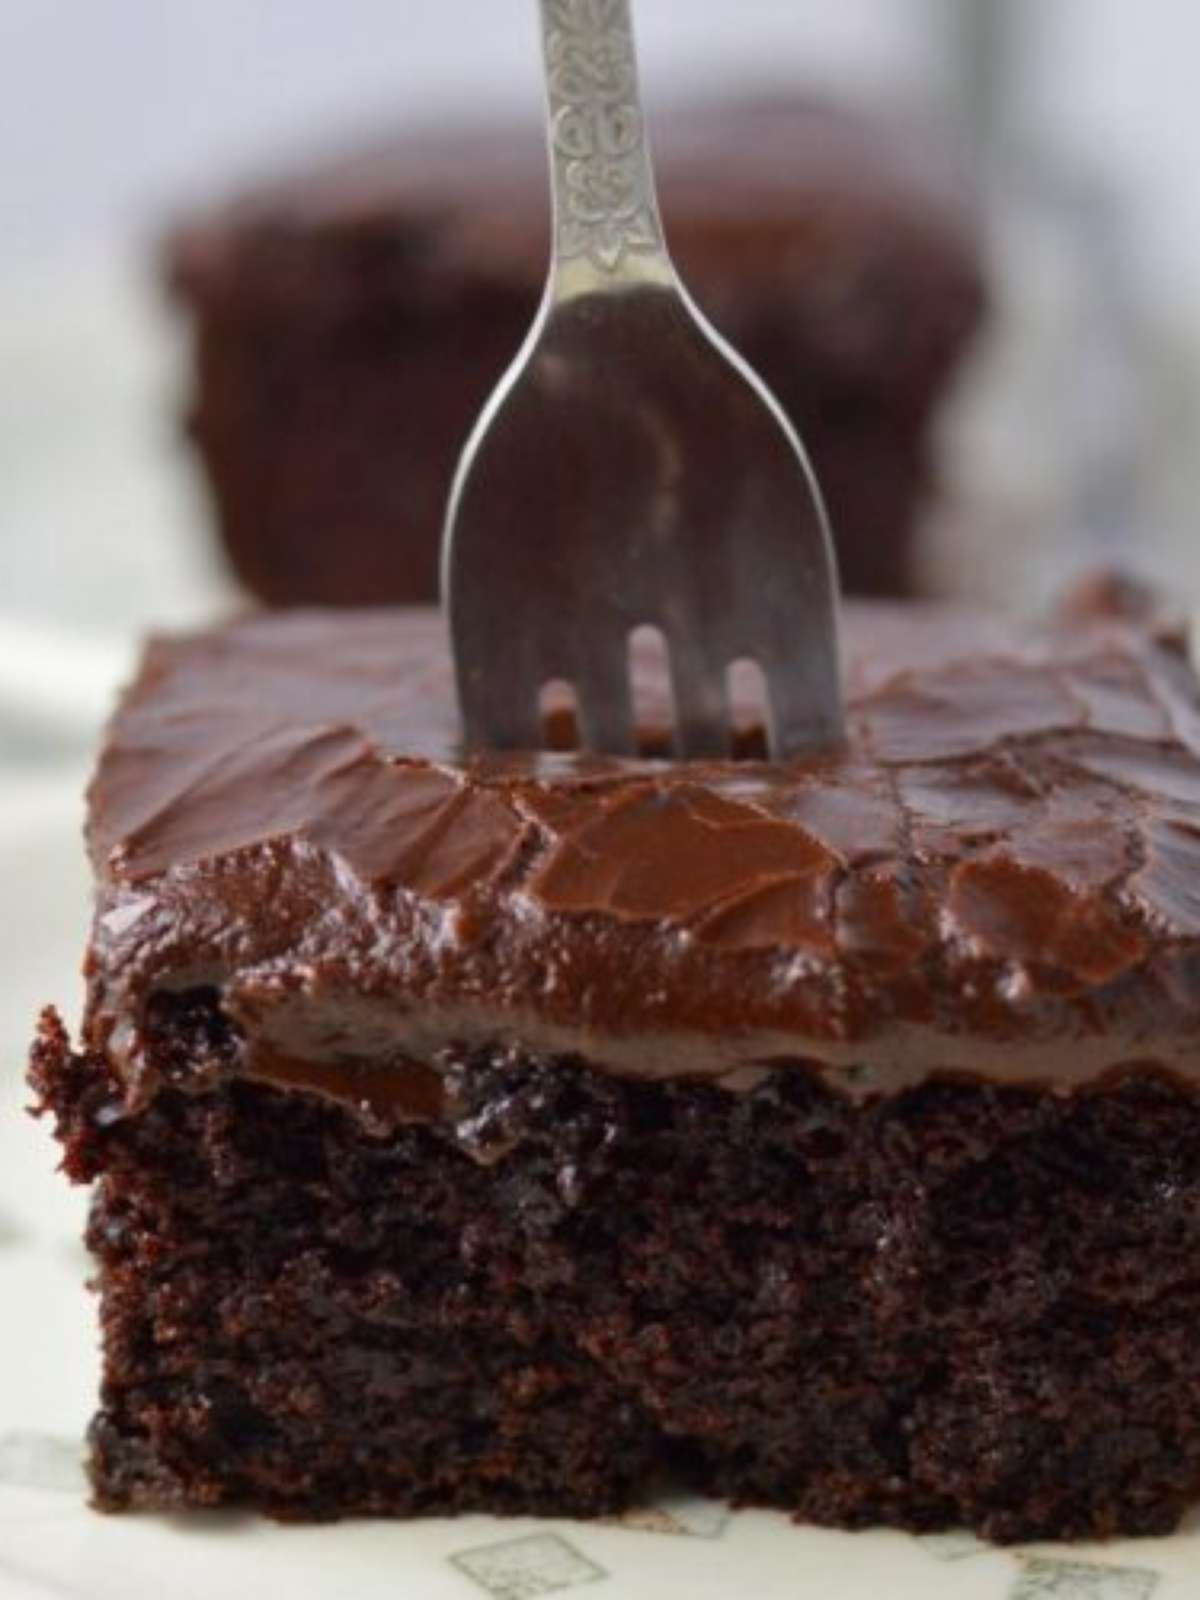 A melhor receita de bolo de chocolate - TudoGostoso